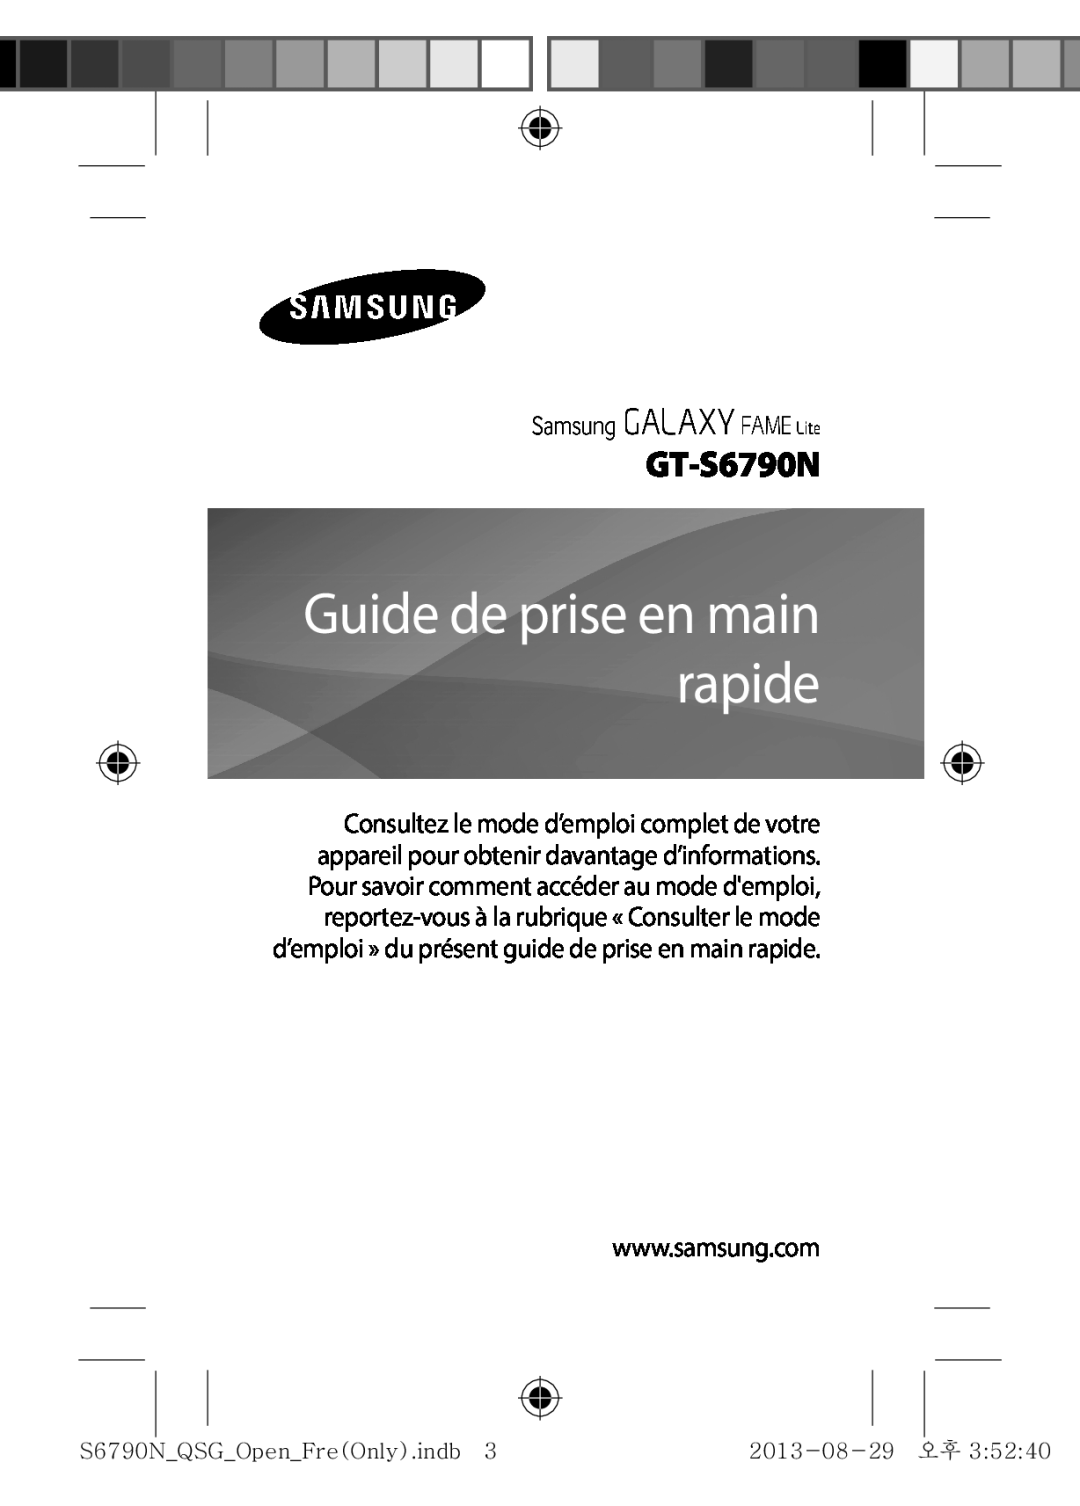 Samsung GT-S6790PWNSFR, GT-S6790MKNSFR, GT-S6790ZWYXEF, GT-S6790MKNXEF manual Guide de prise en main rapide, GT-S6790N 